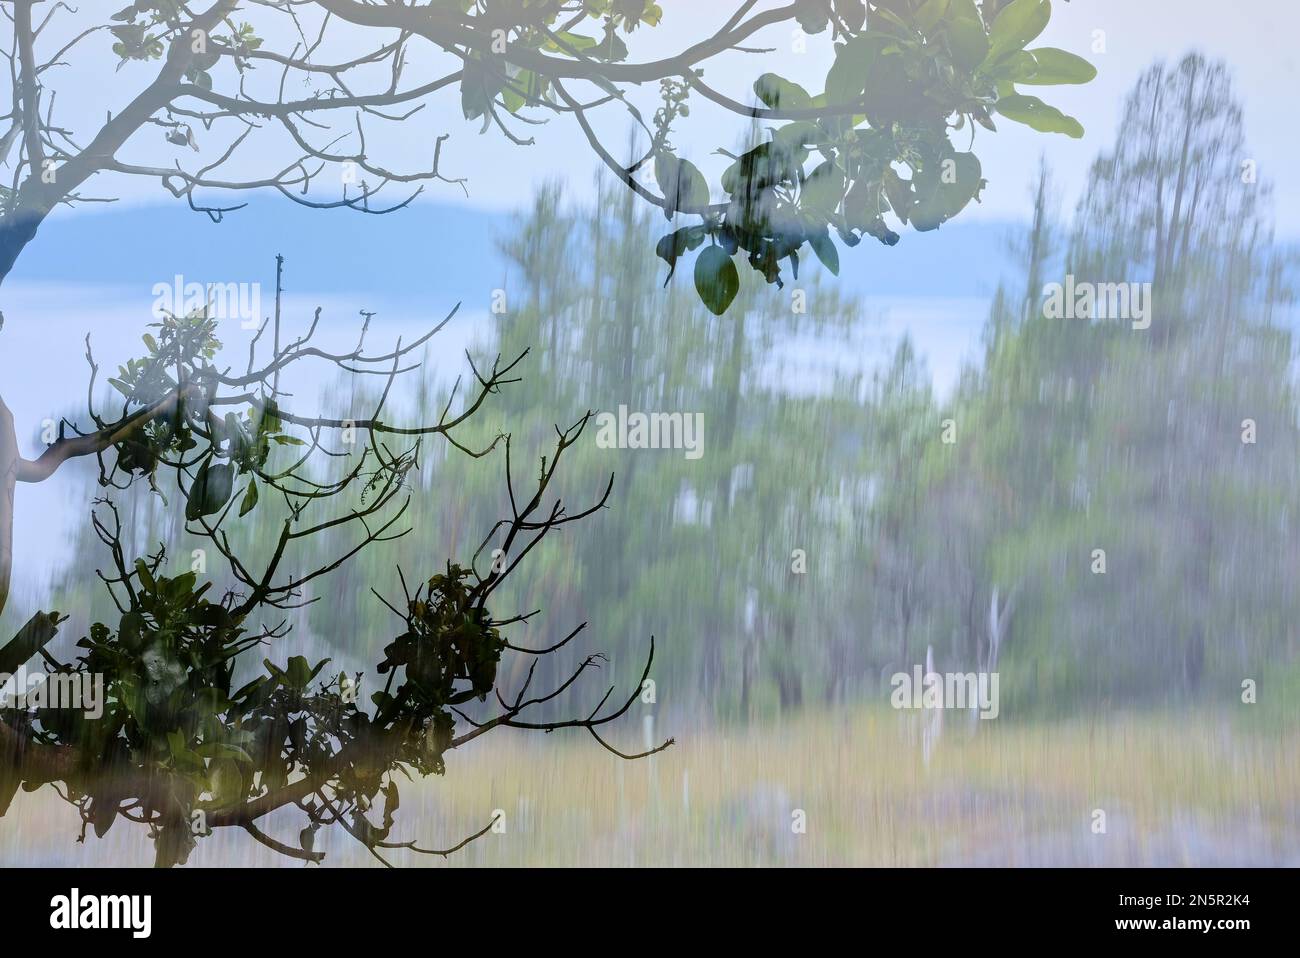 Livelli struttura astratta. Primo piano di foglie e rami di albero affilati sullo sfondo di alberi di conifere offuscati dal movimento intenzionale della fotocamera. Foto Stock